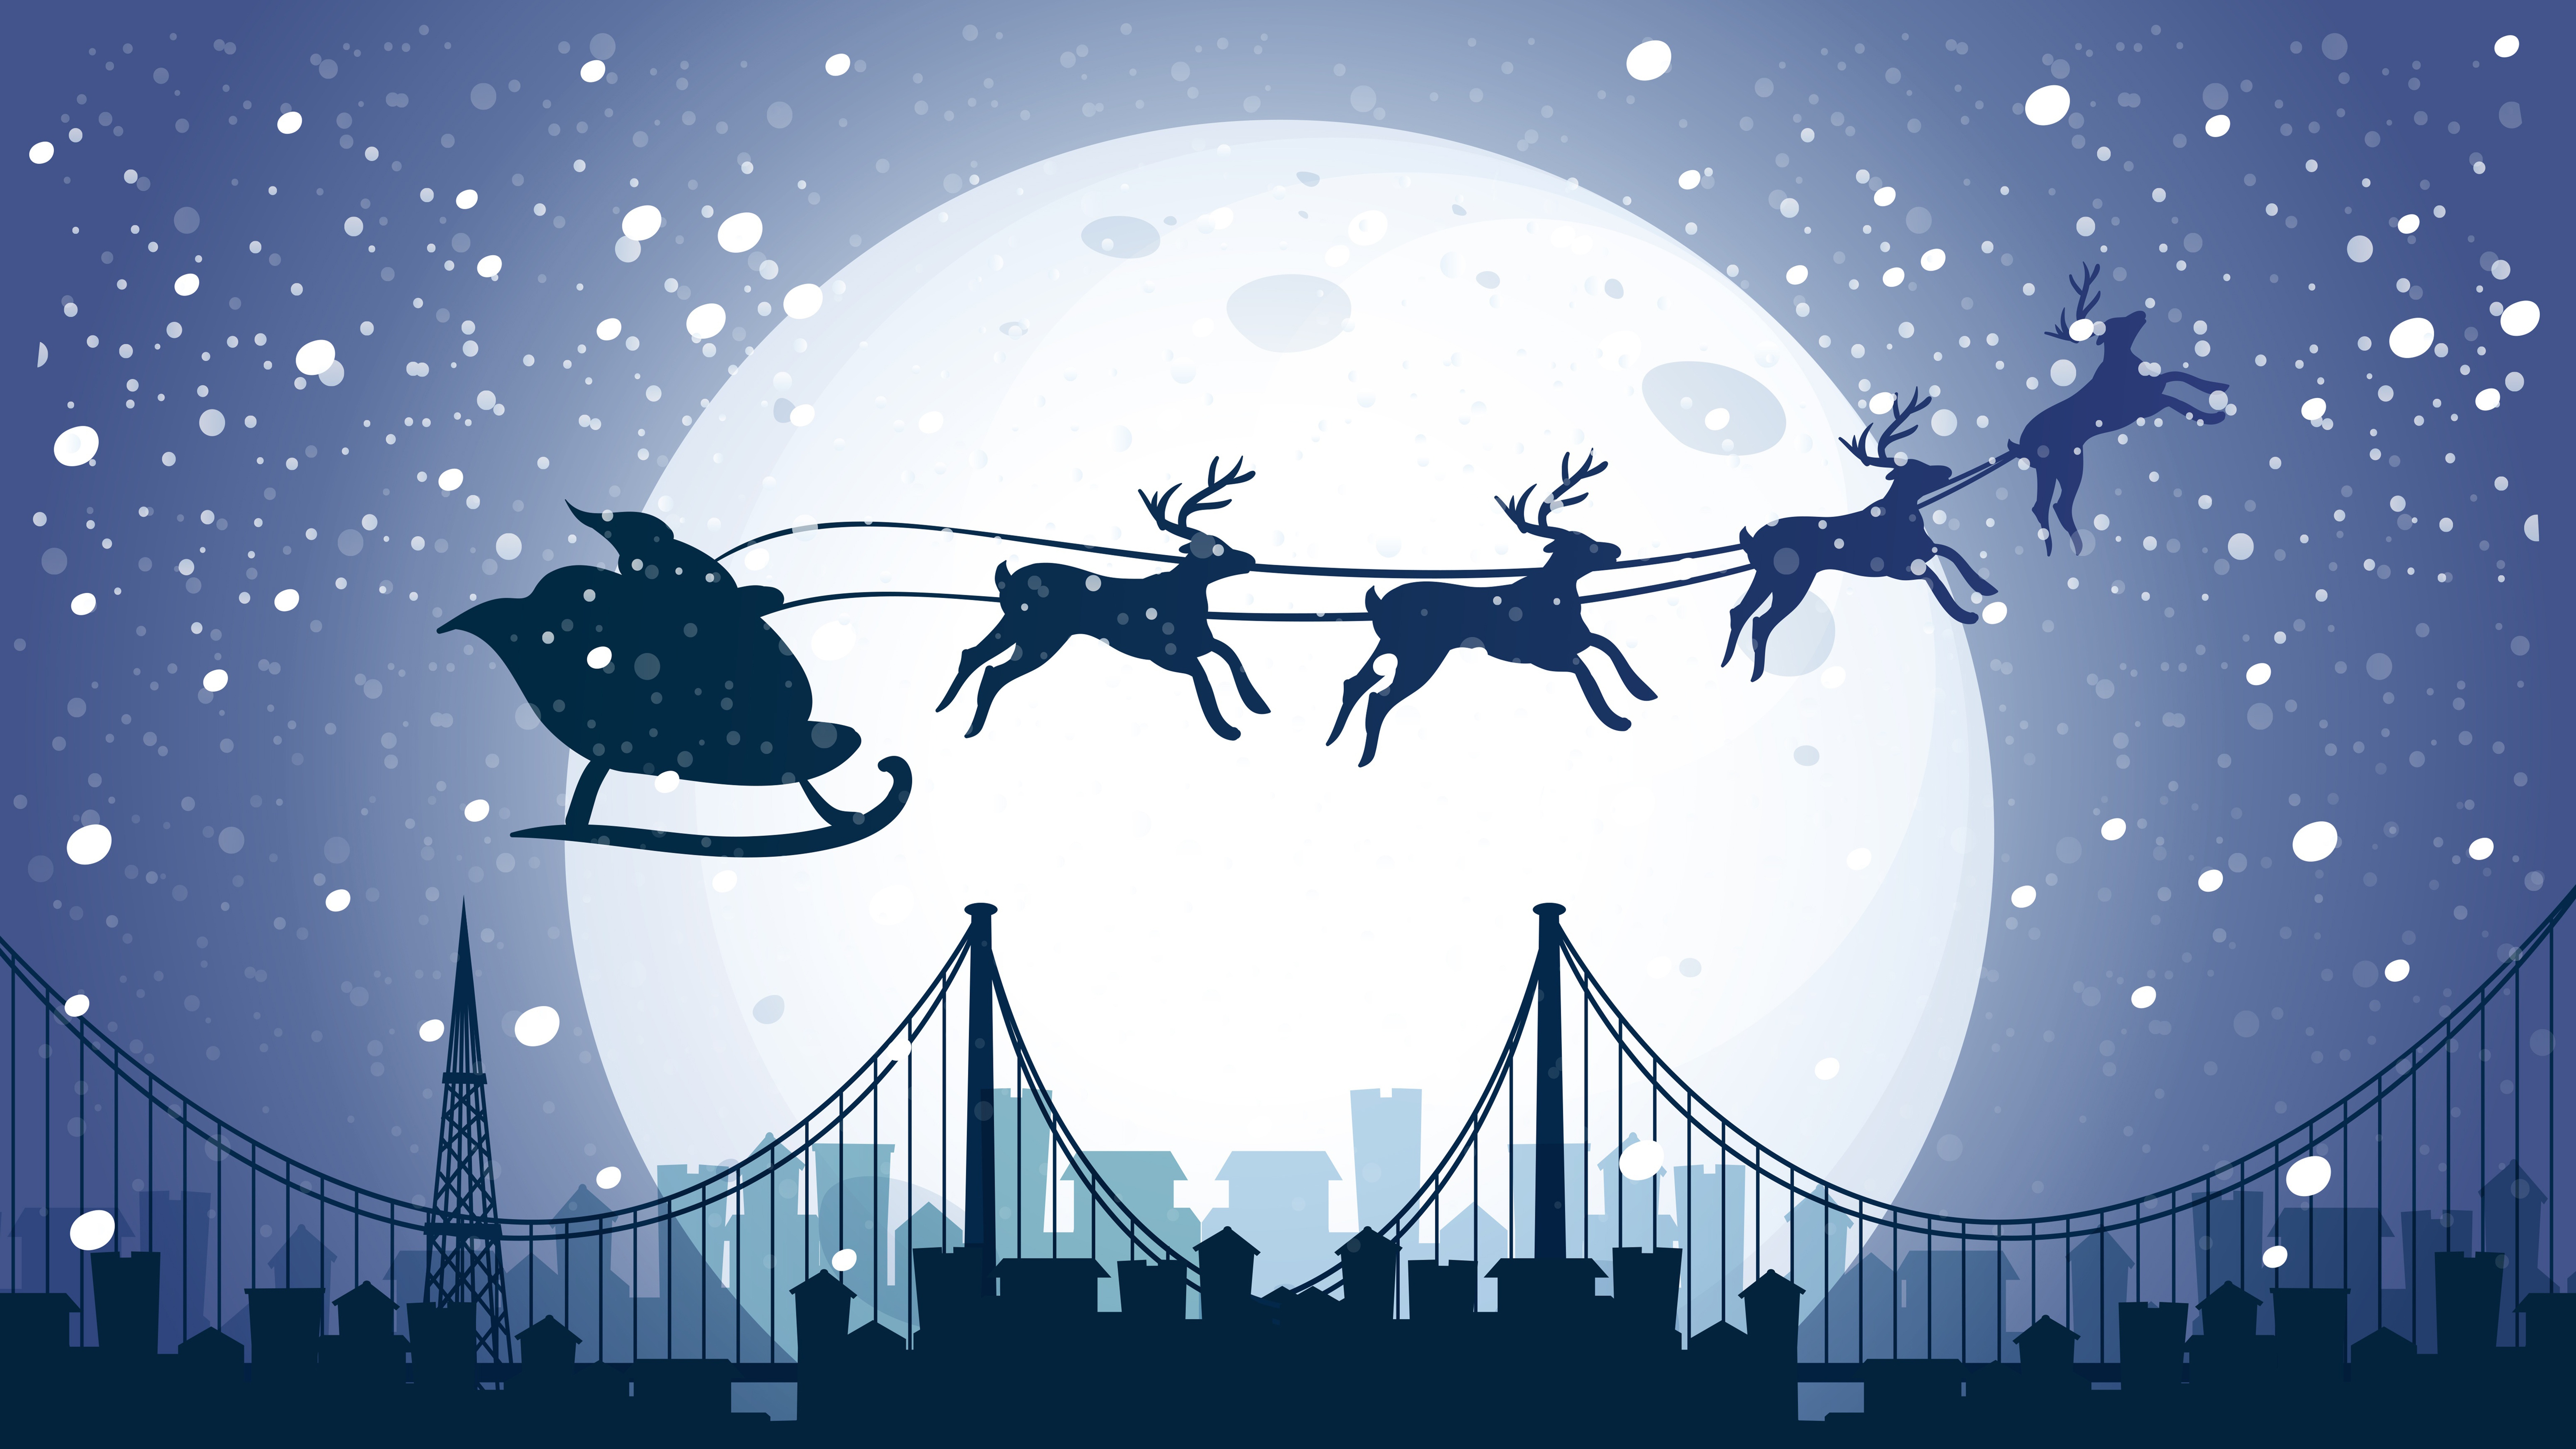 Fondos de pantalla Santa Claus in sleigh with his reindeer